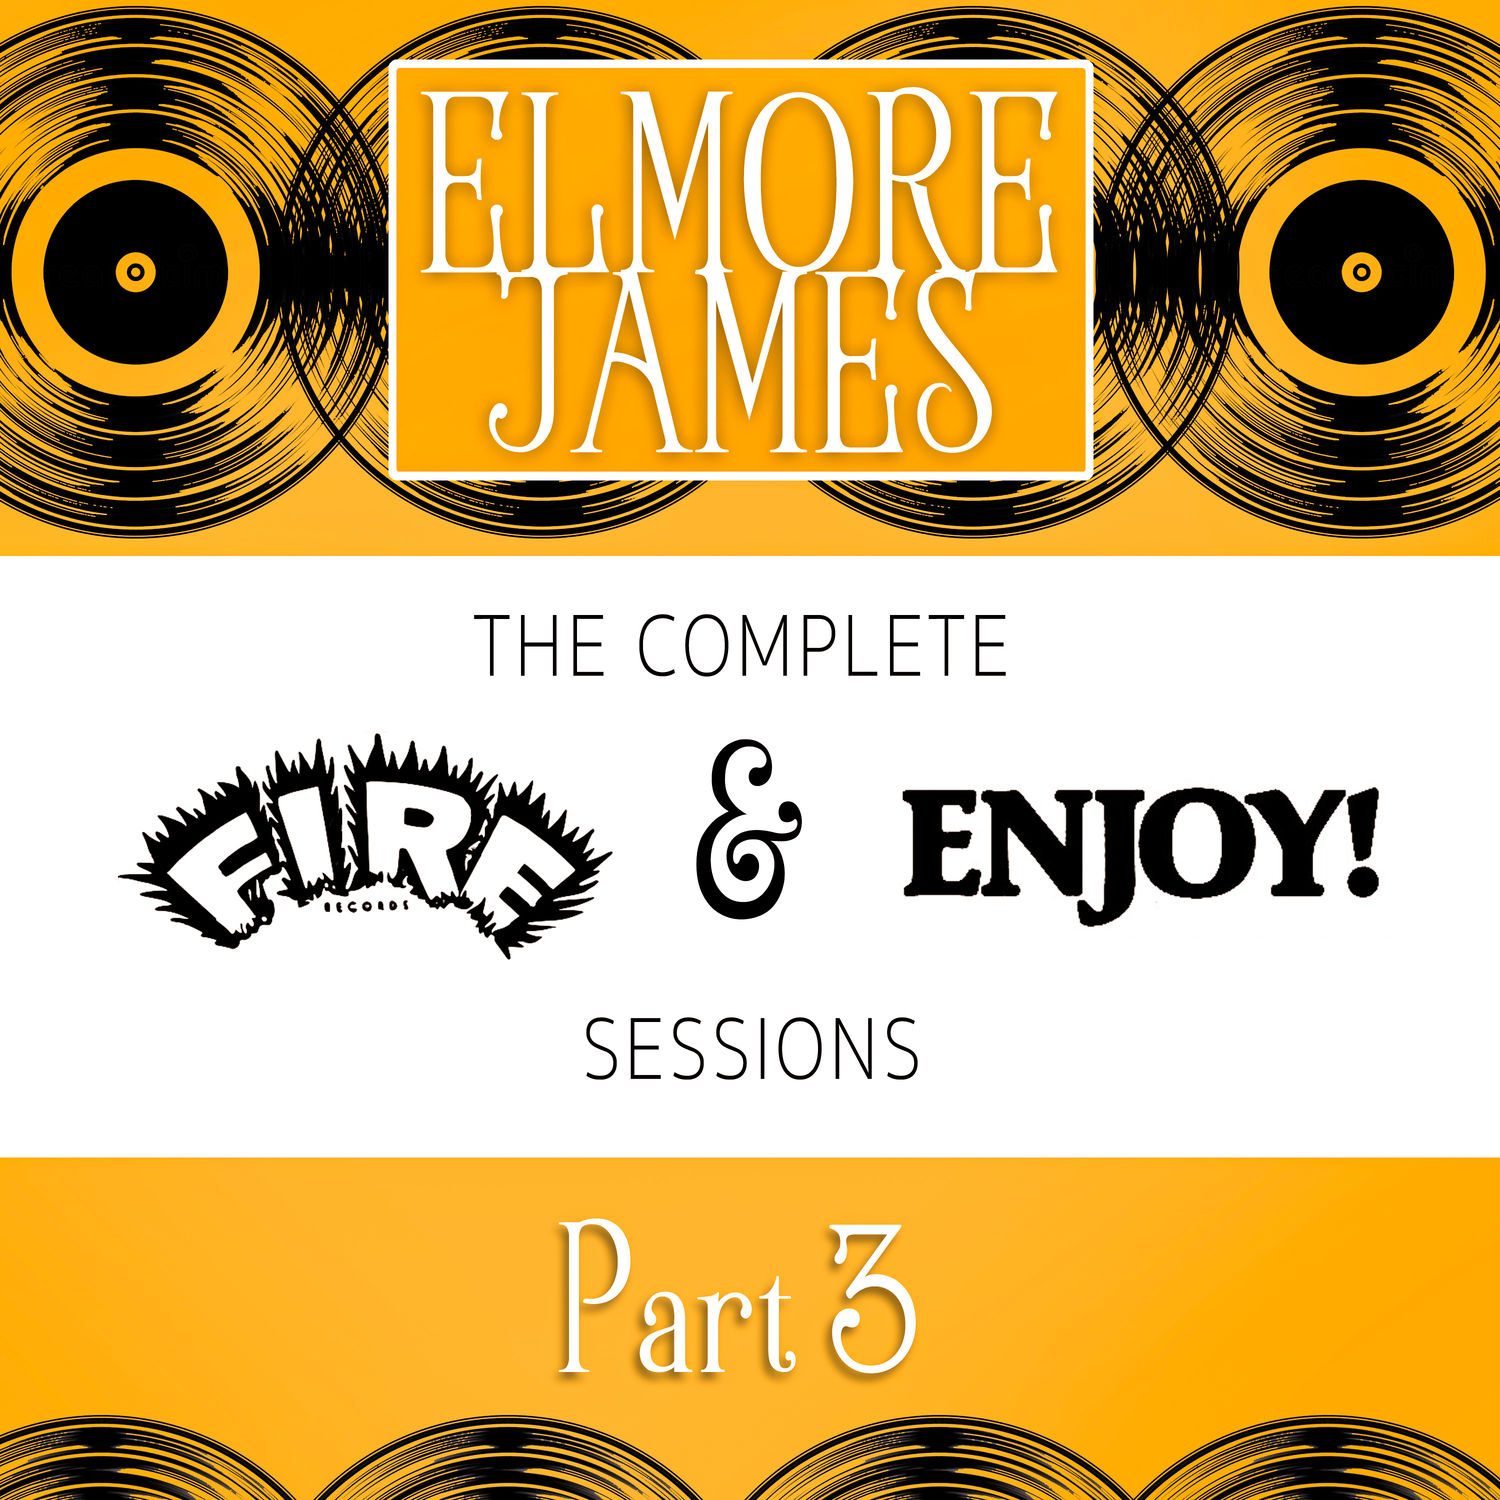 Elmore James - The Complete Fire & Enjoy Sessions, Pt. 3 (1962/2021) [FLAC 24bit/96kHz]